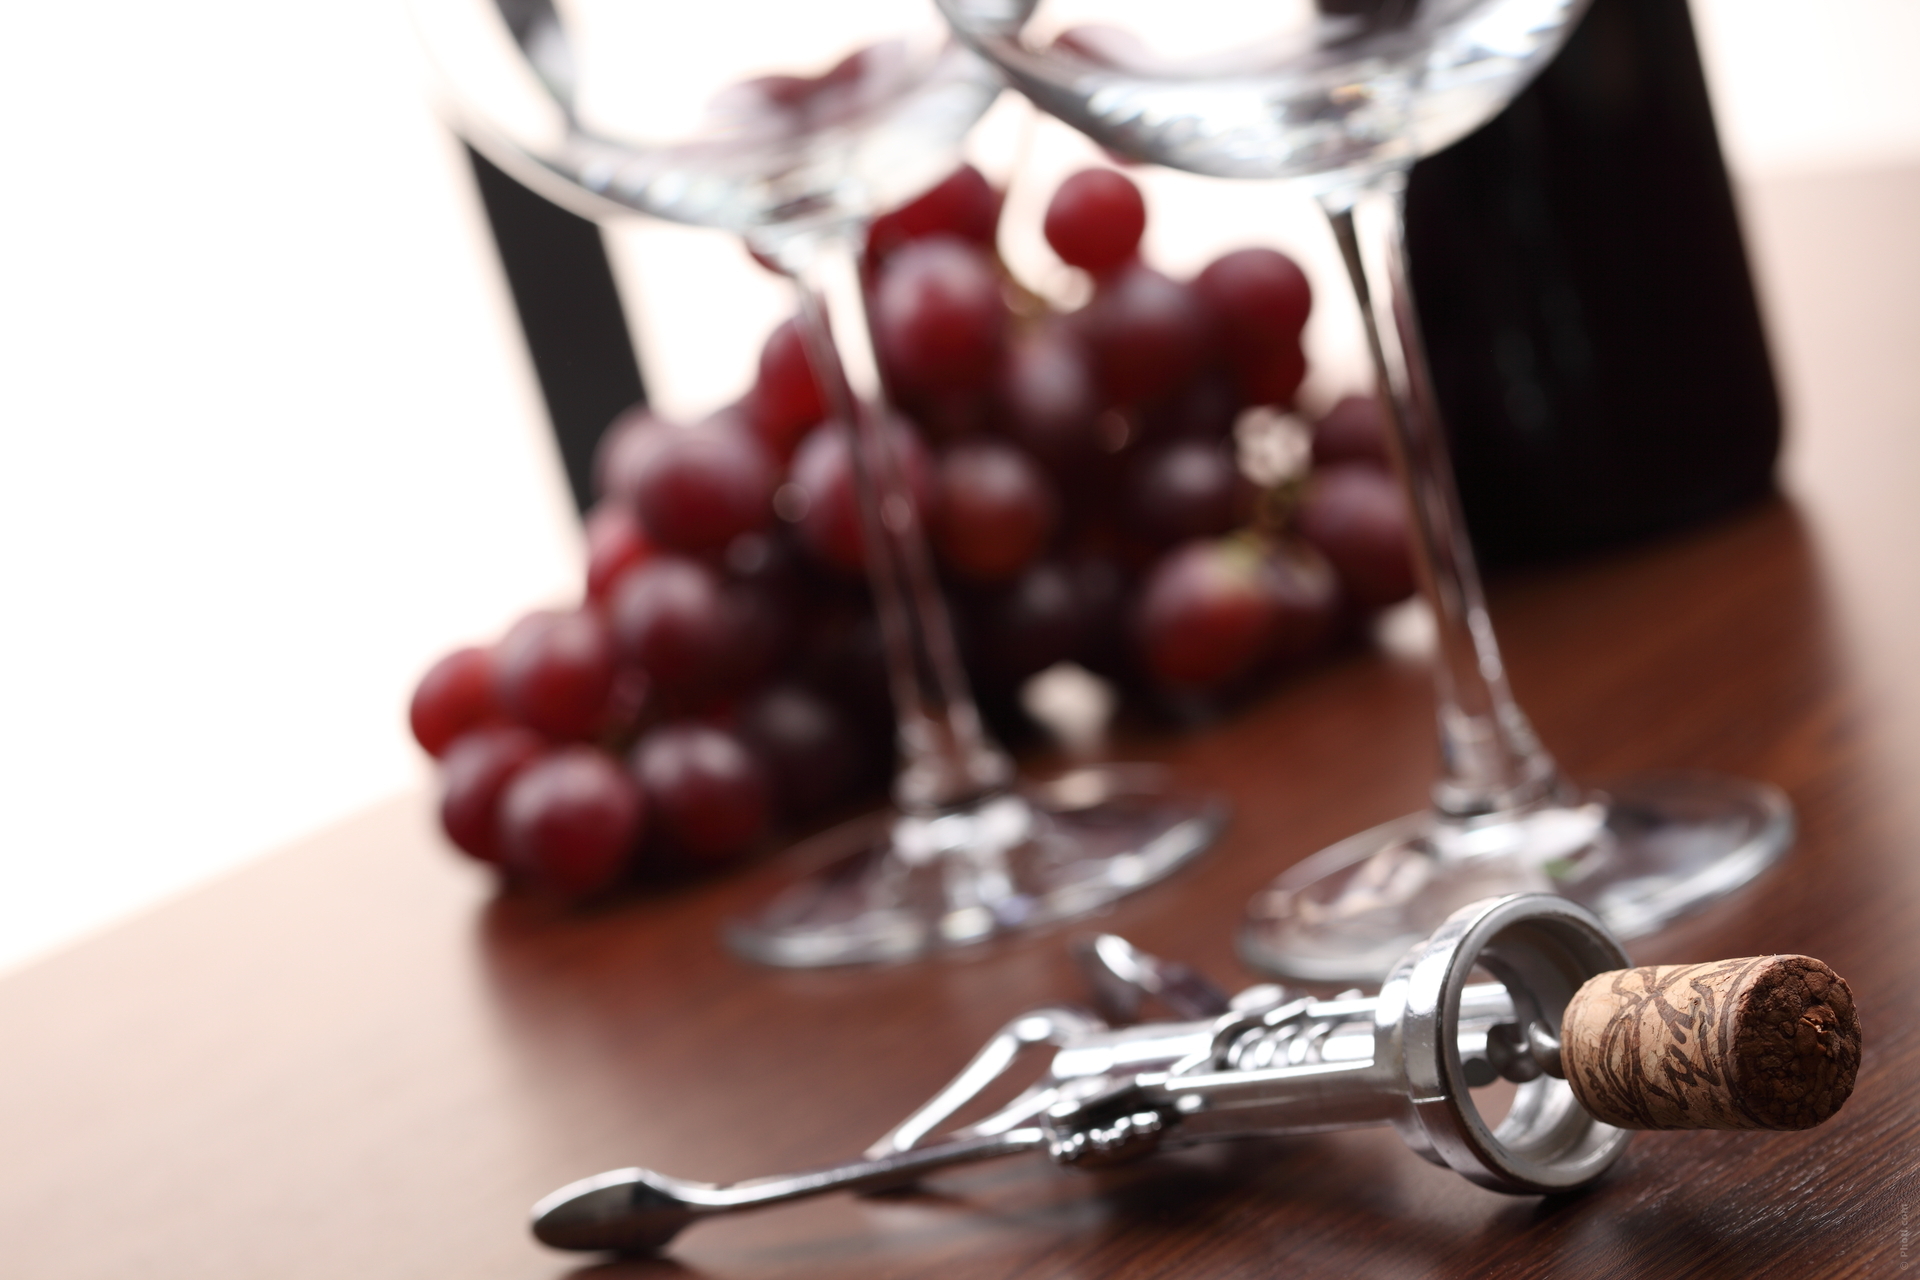 Uvas de los vinos tintos cordobeses